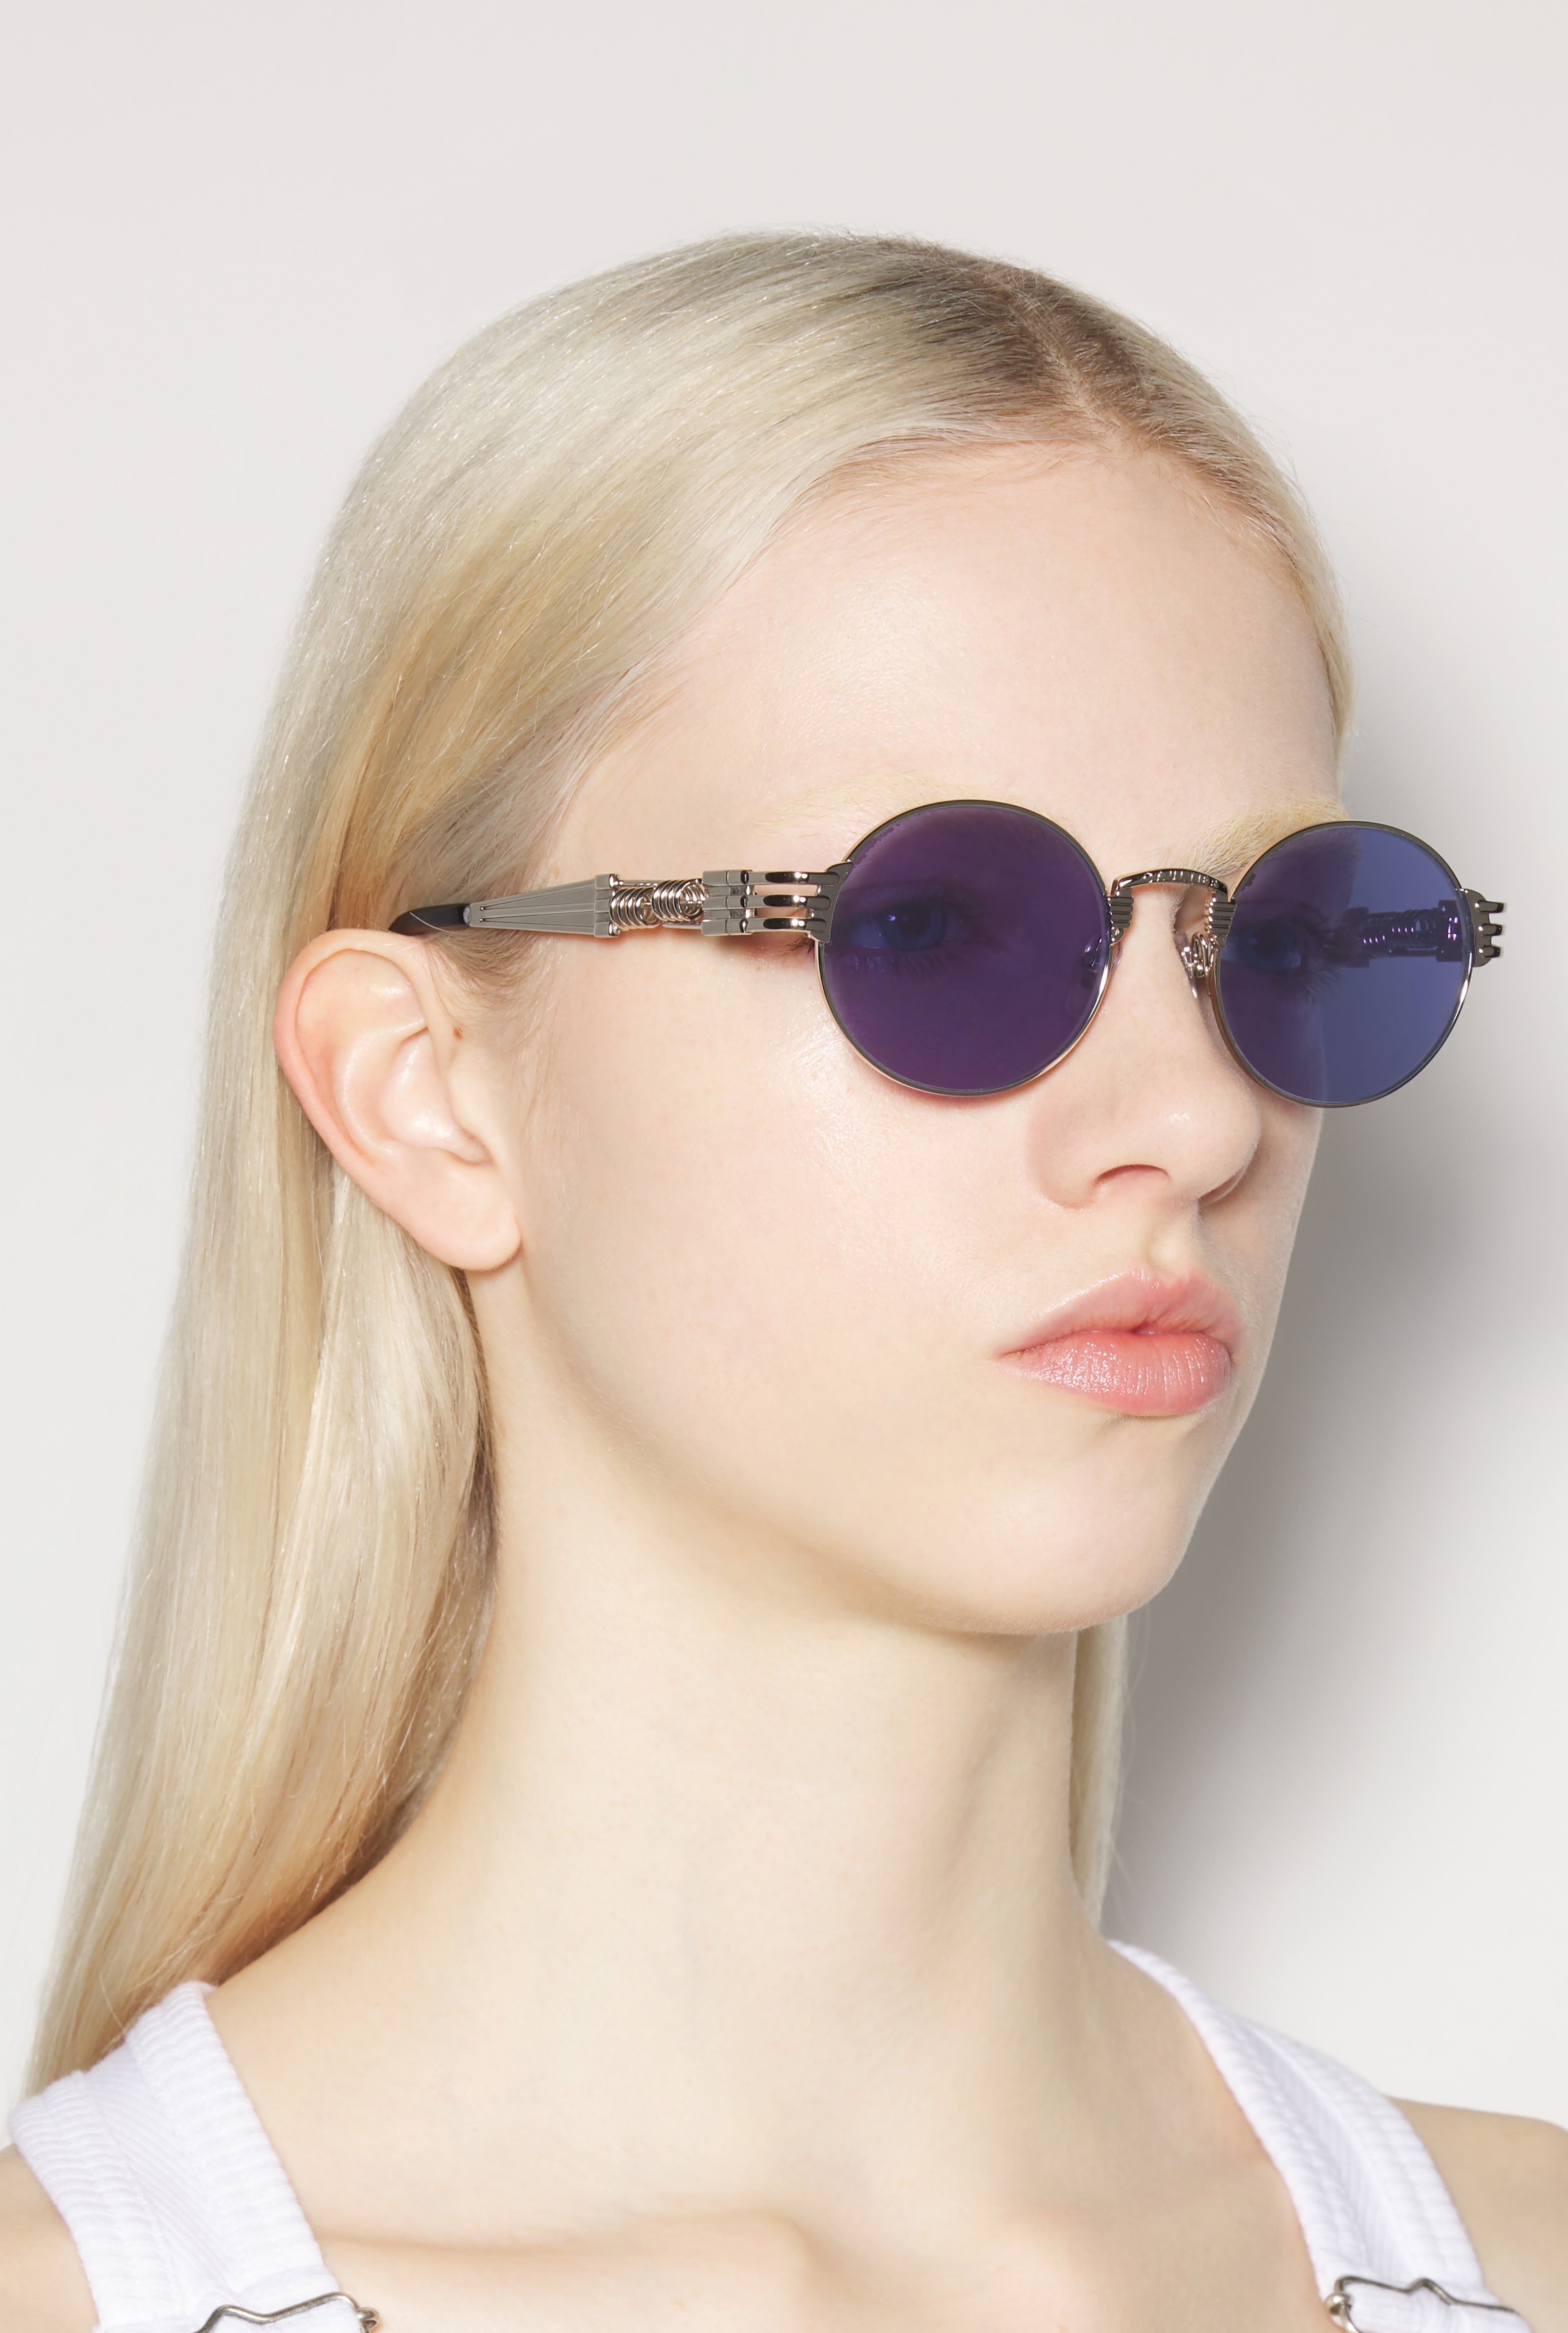 The Silver 56-6106 Sunglasses